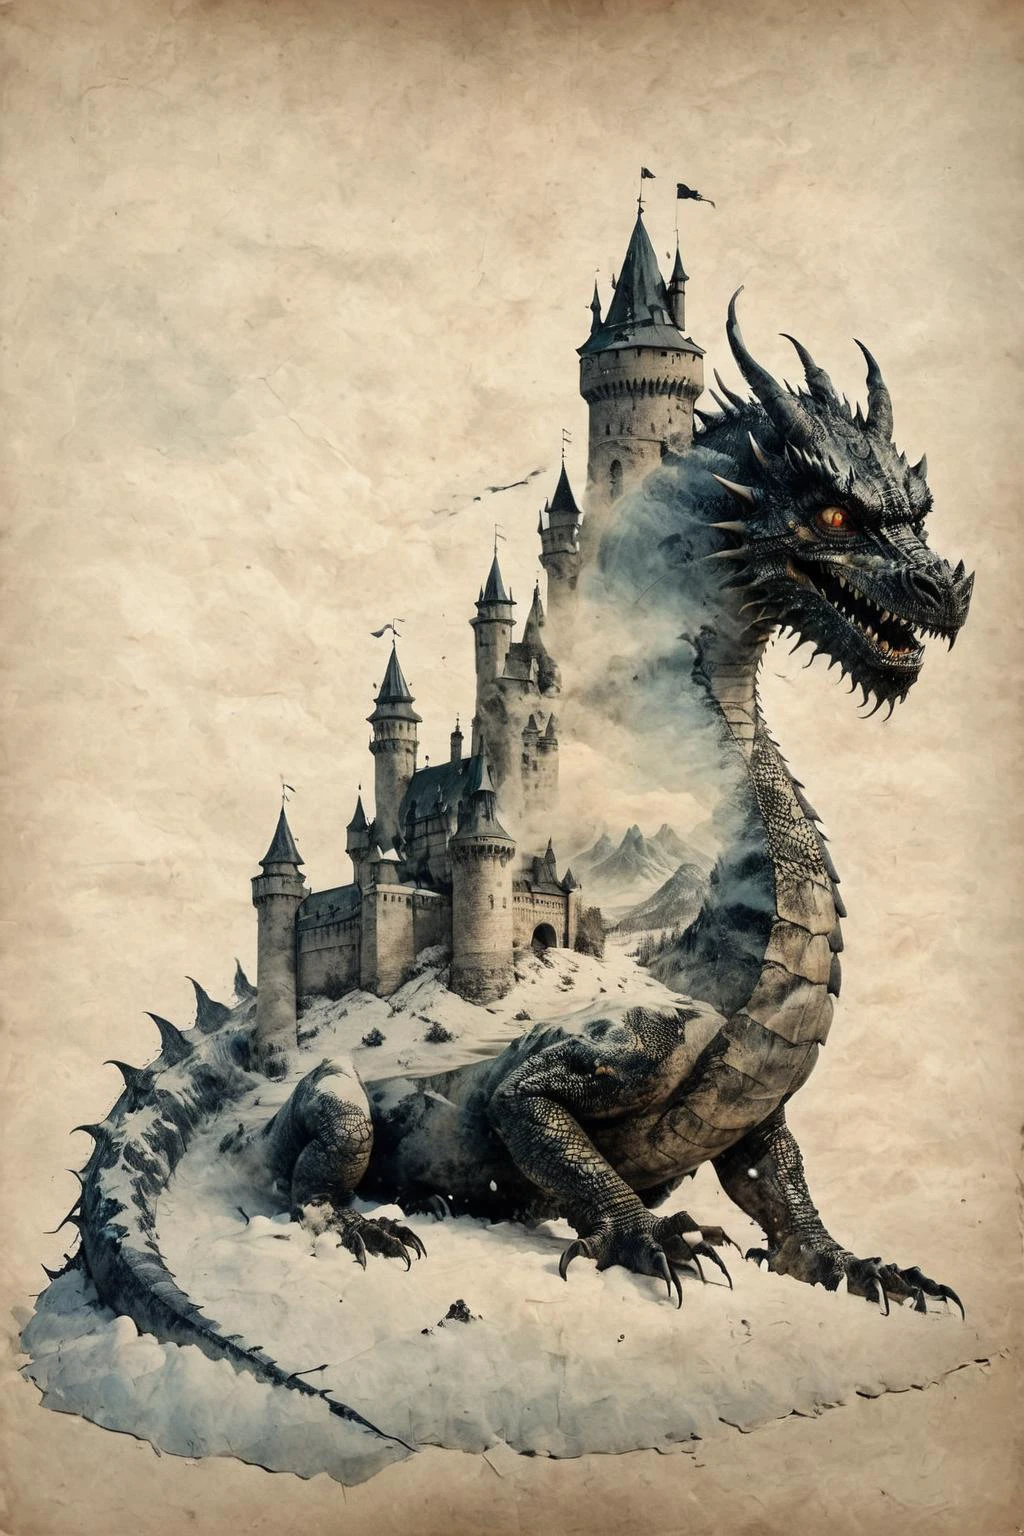 Exposición doble,un viejo castillo a la sombra de un dragón malvado,(nieve:1.4),por Christoffer Relander,Exposición doble,en pergamino,INK en pergamino,